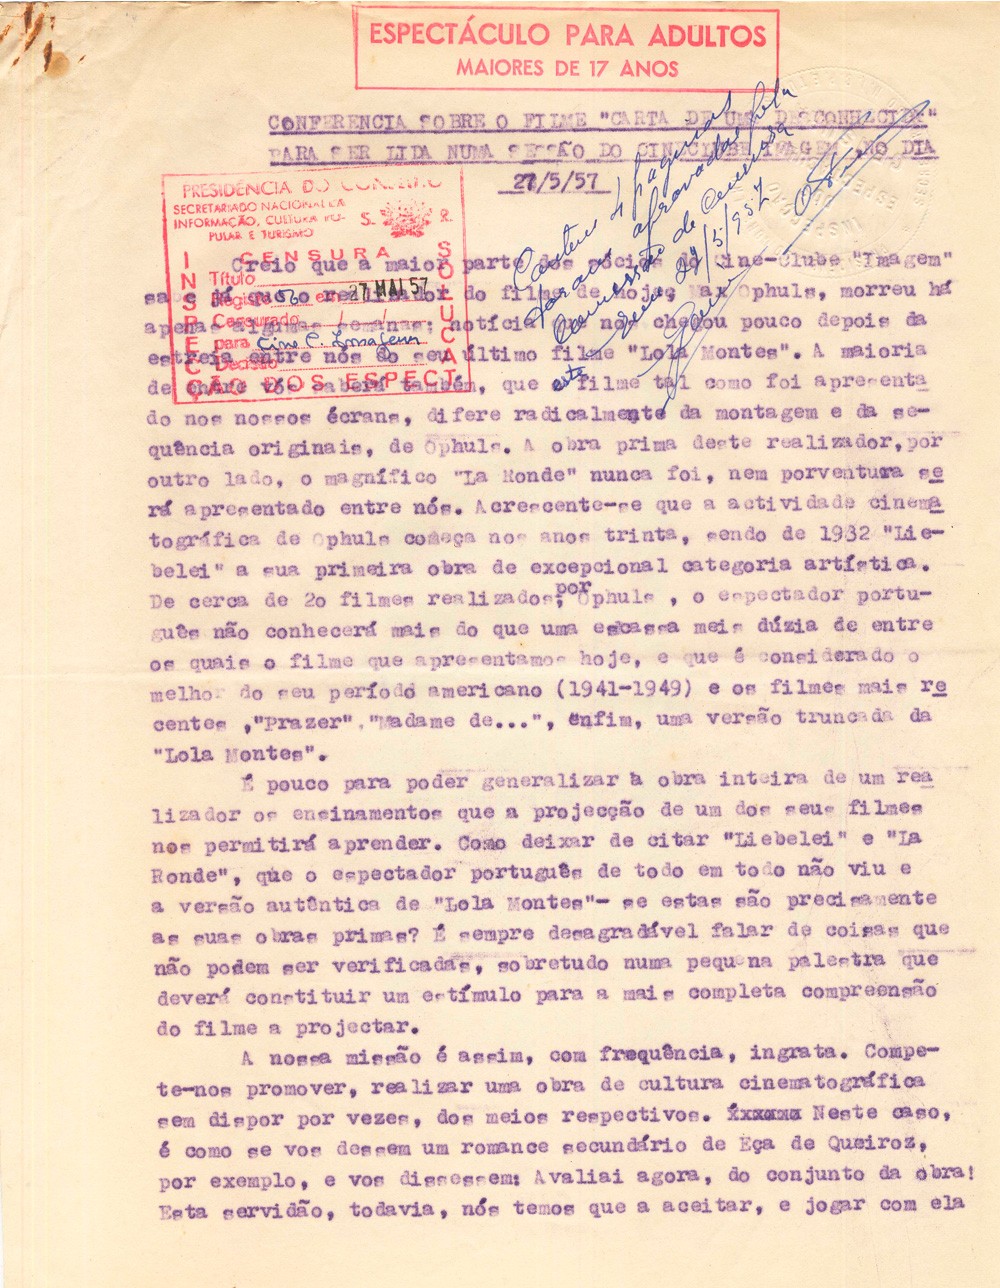  Comunicação do Cineclube Imagem censurada pela Inspecção dos Espectáculos, 1957. 